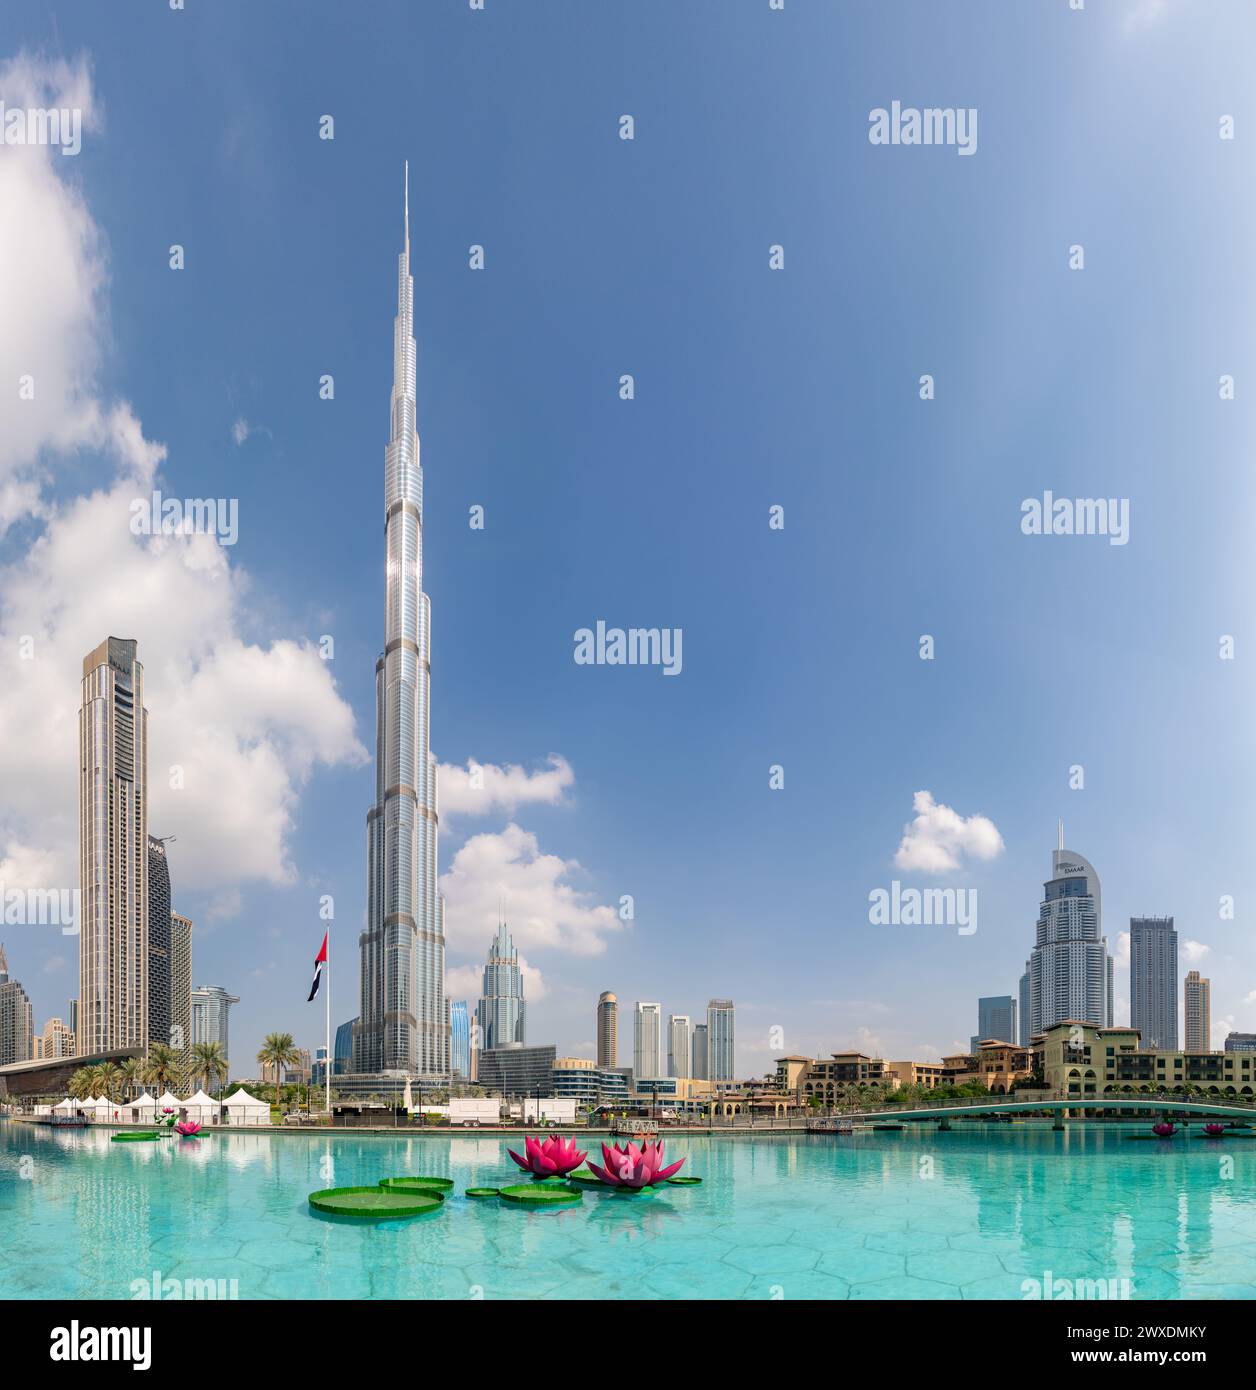 Una imagen del Burj Khalifa que se eleva sobre los edificios cercanos del centro de Dubai y las aguas azules del lago Burj Khalifa. Foto de stock